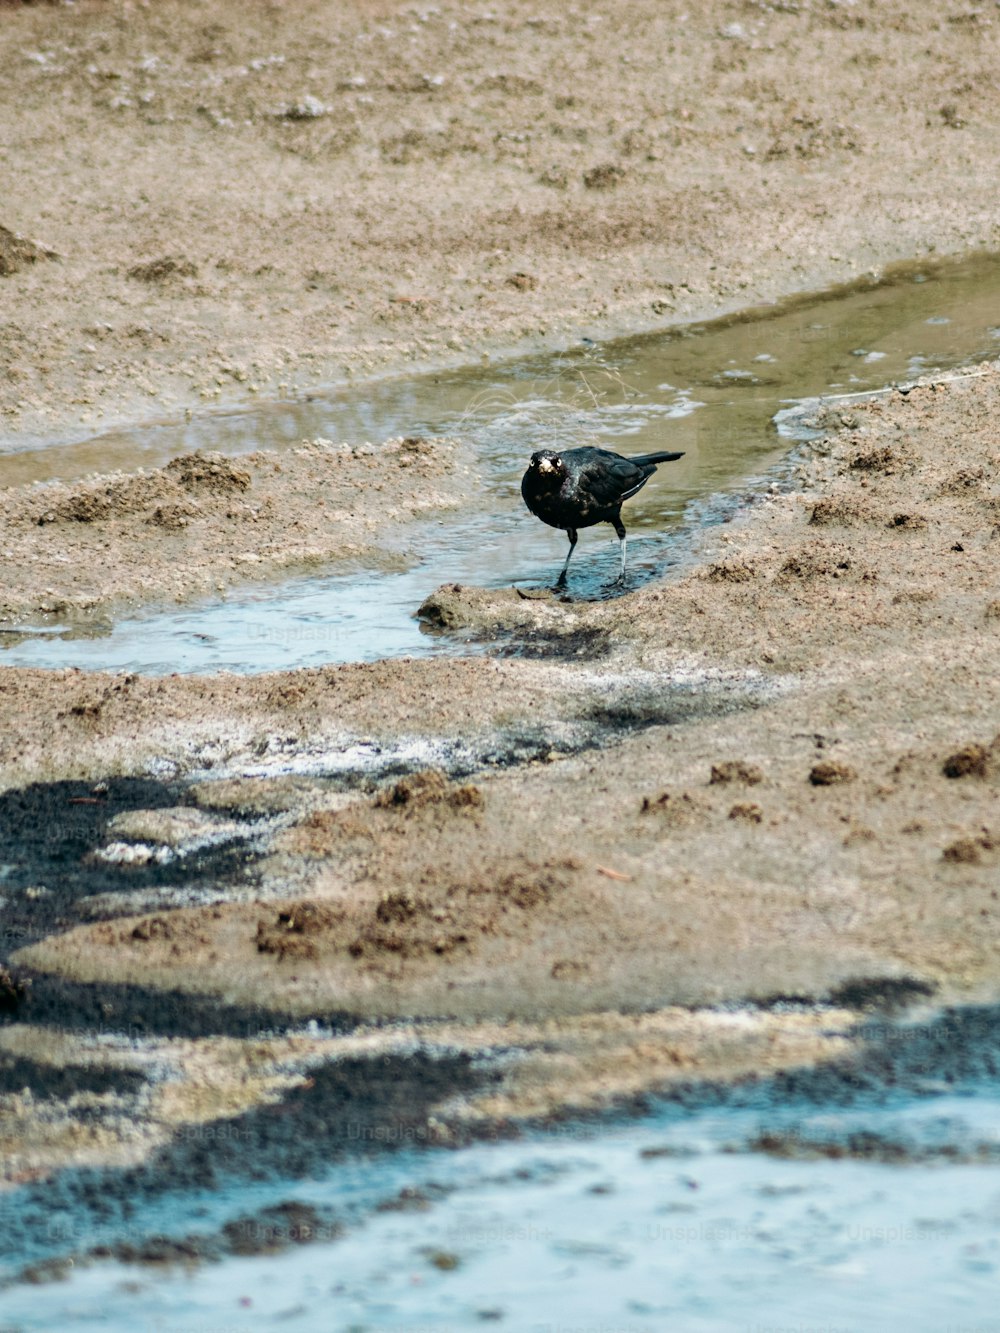 a black bird standing on top of a sandy beach